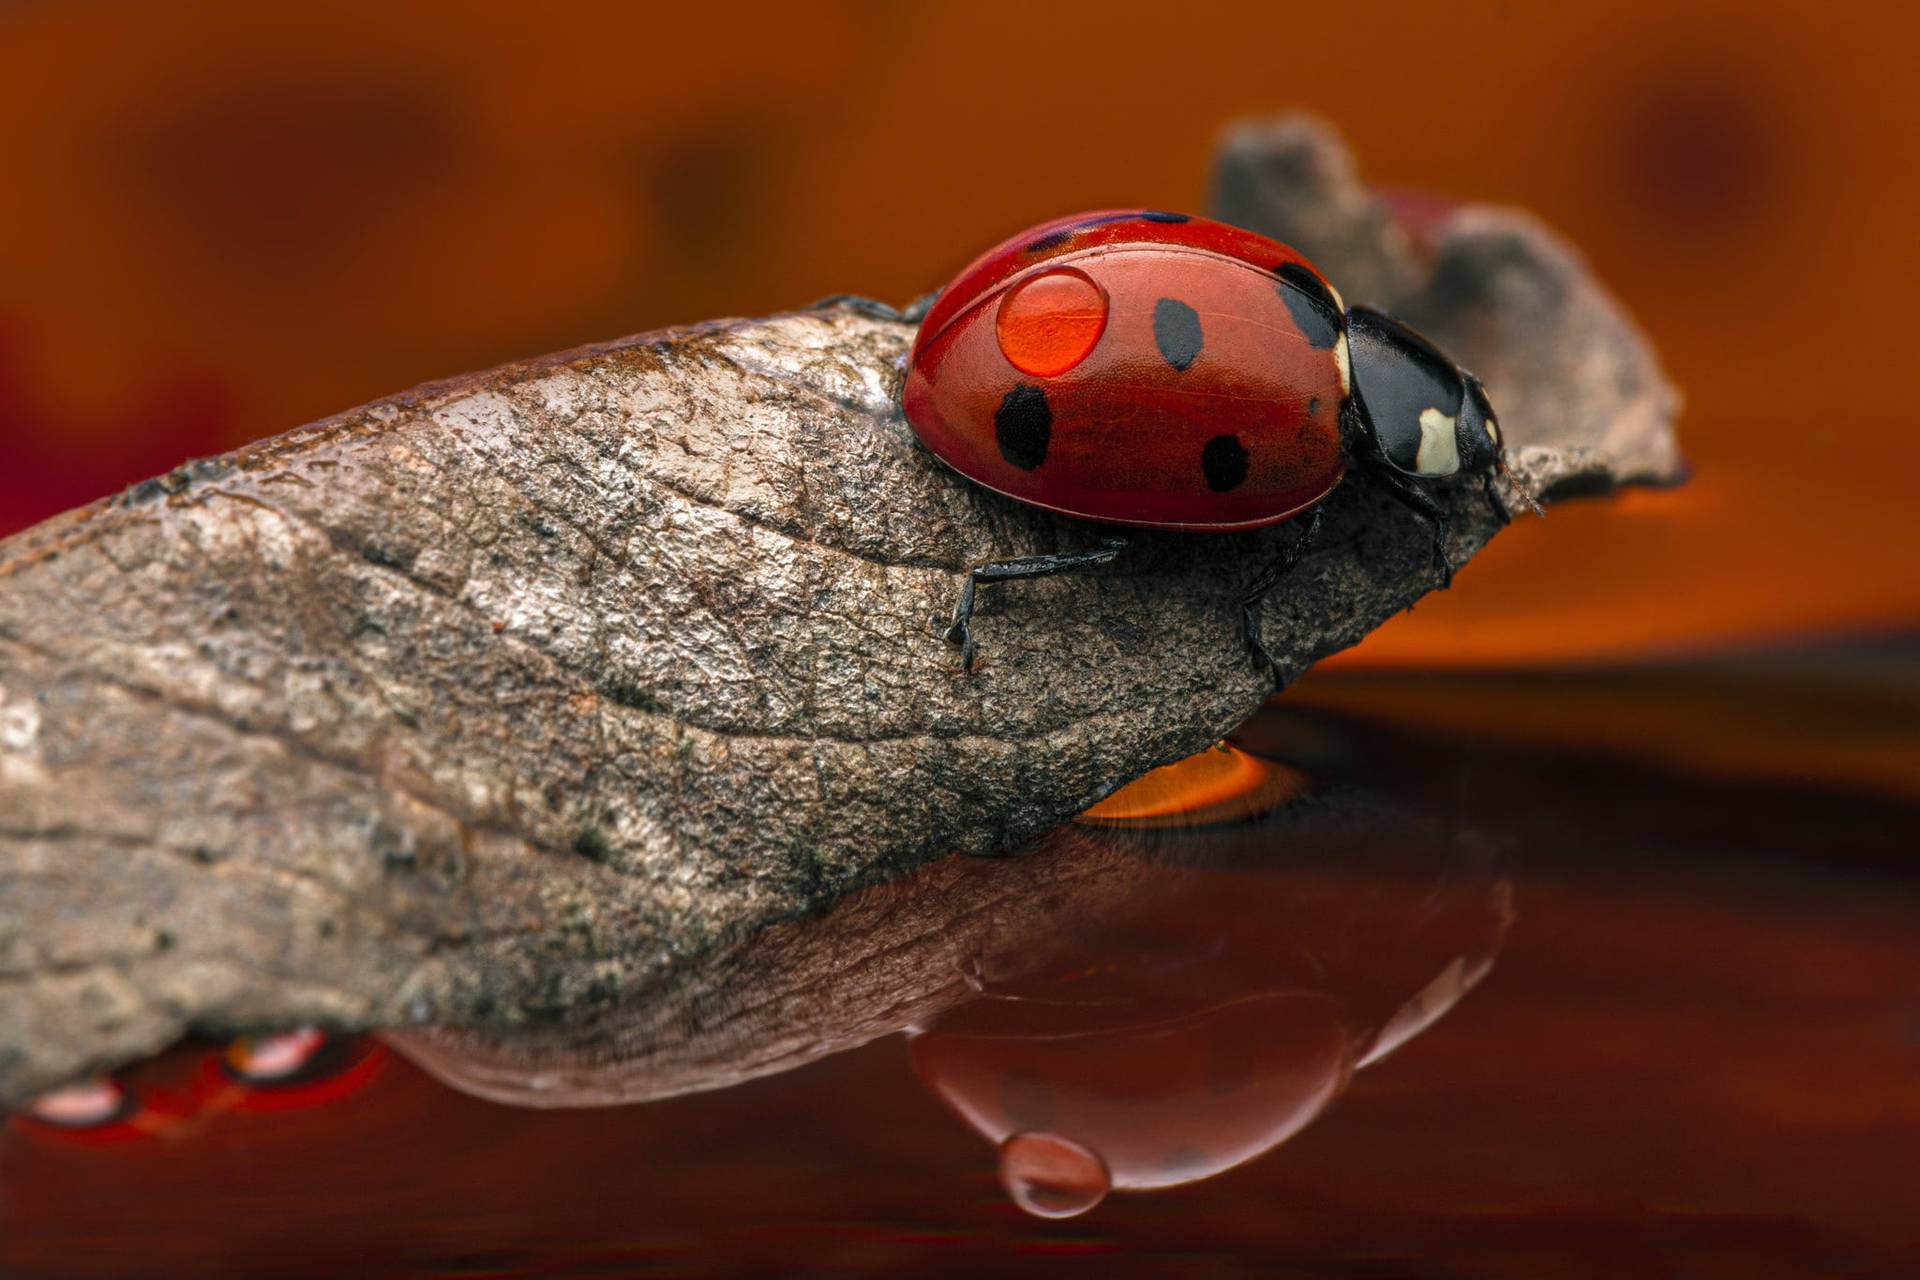 Ladybug Riding A Dried Leaf